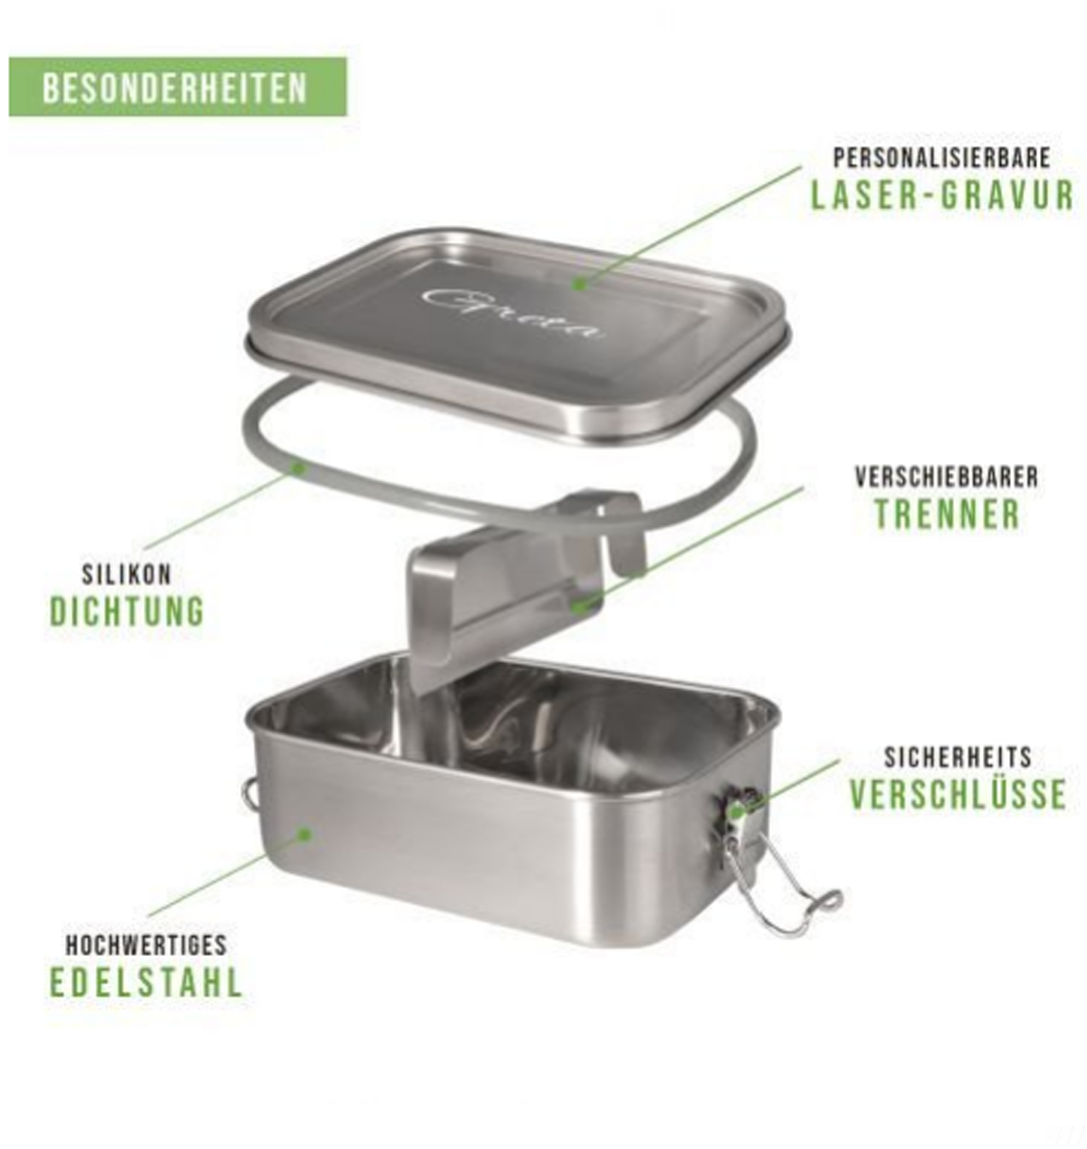 Lunchbox aus Edelstahl - in drei verschiedenen Größen